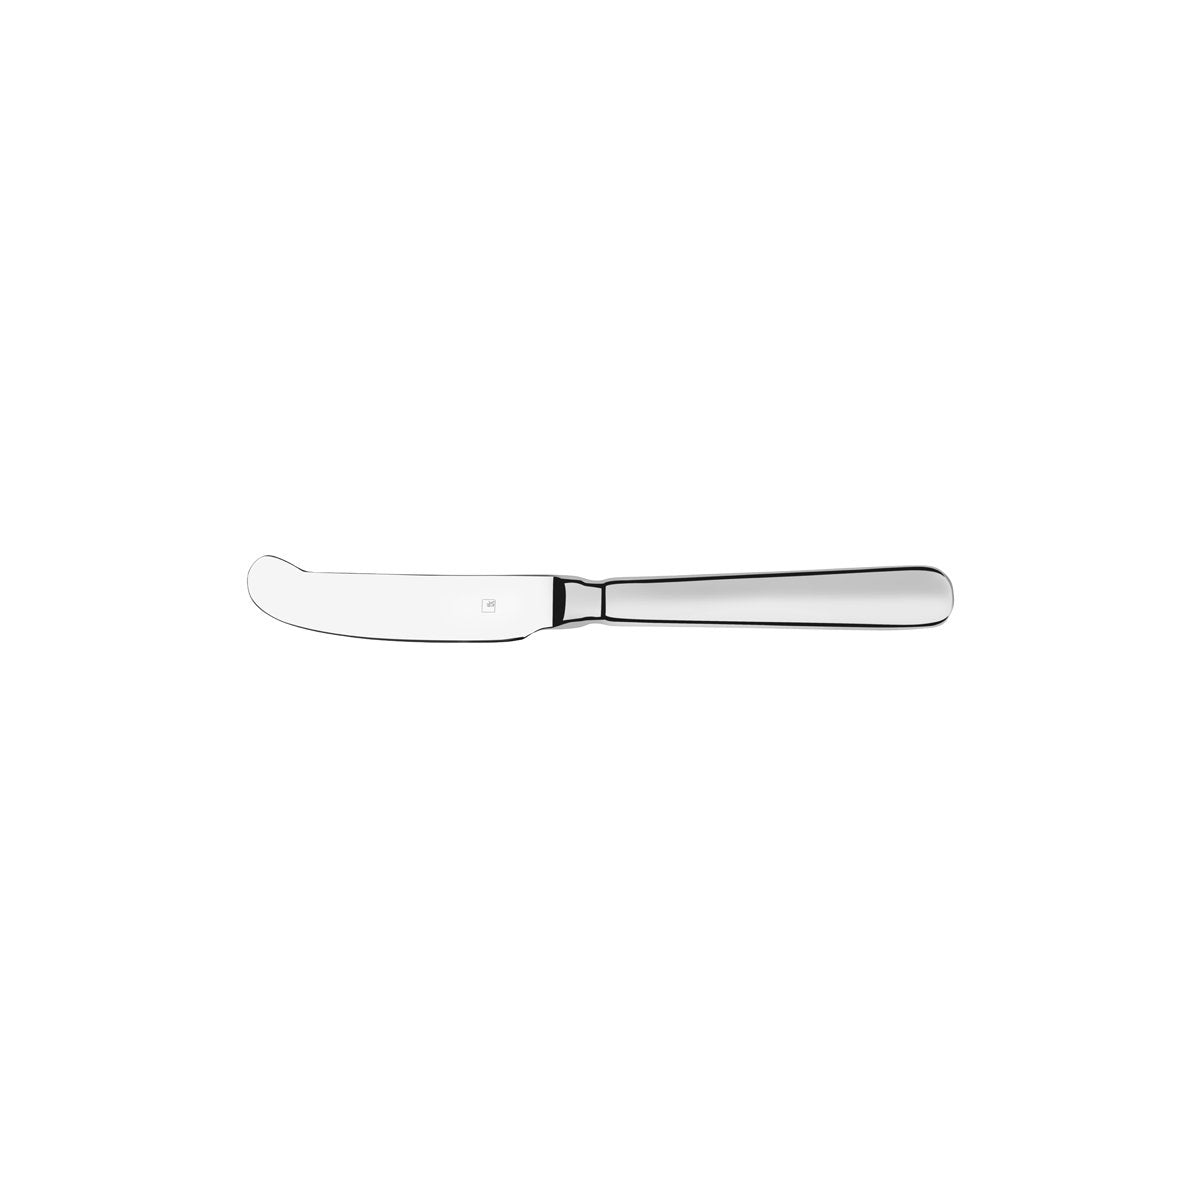 18570 Tablekraft Bogart Butter Knife Tomkin Australia Hospitality Supplies